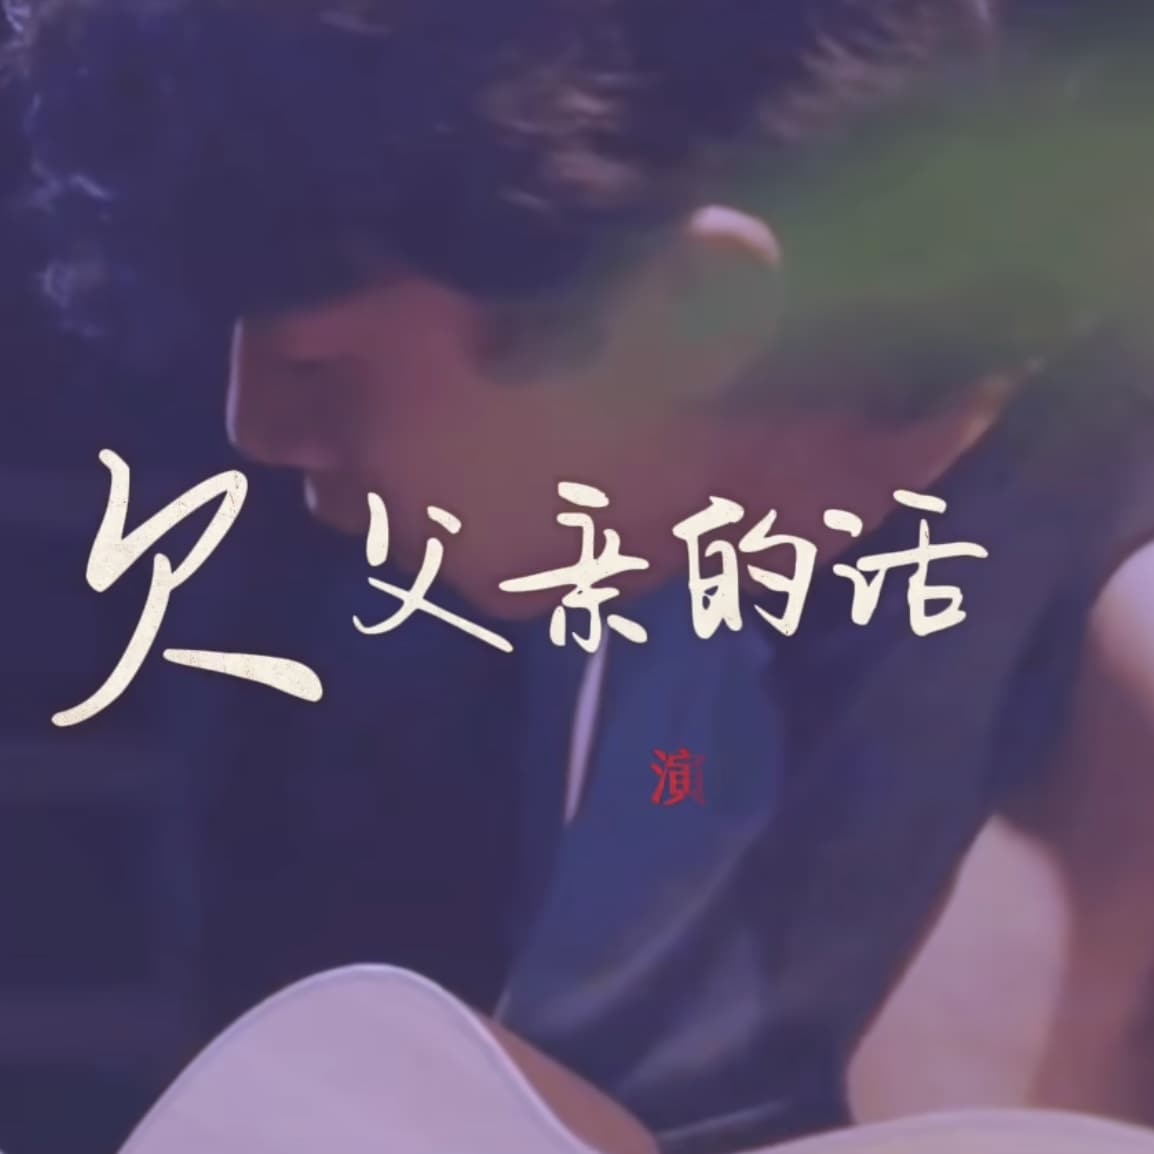 赵雷新歌《欠父亲的话》MV,电影《我爸没说的那件事》主题曲！